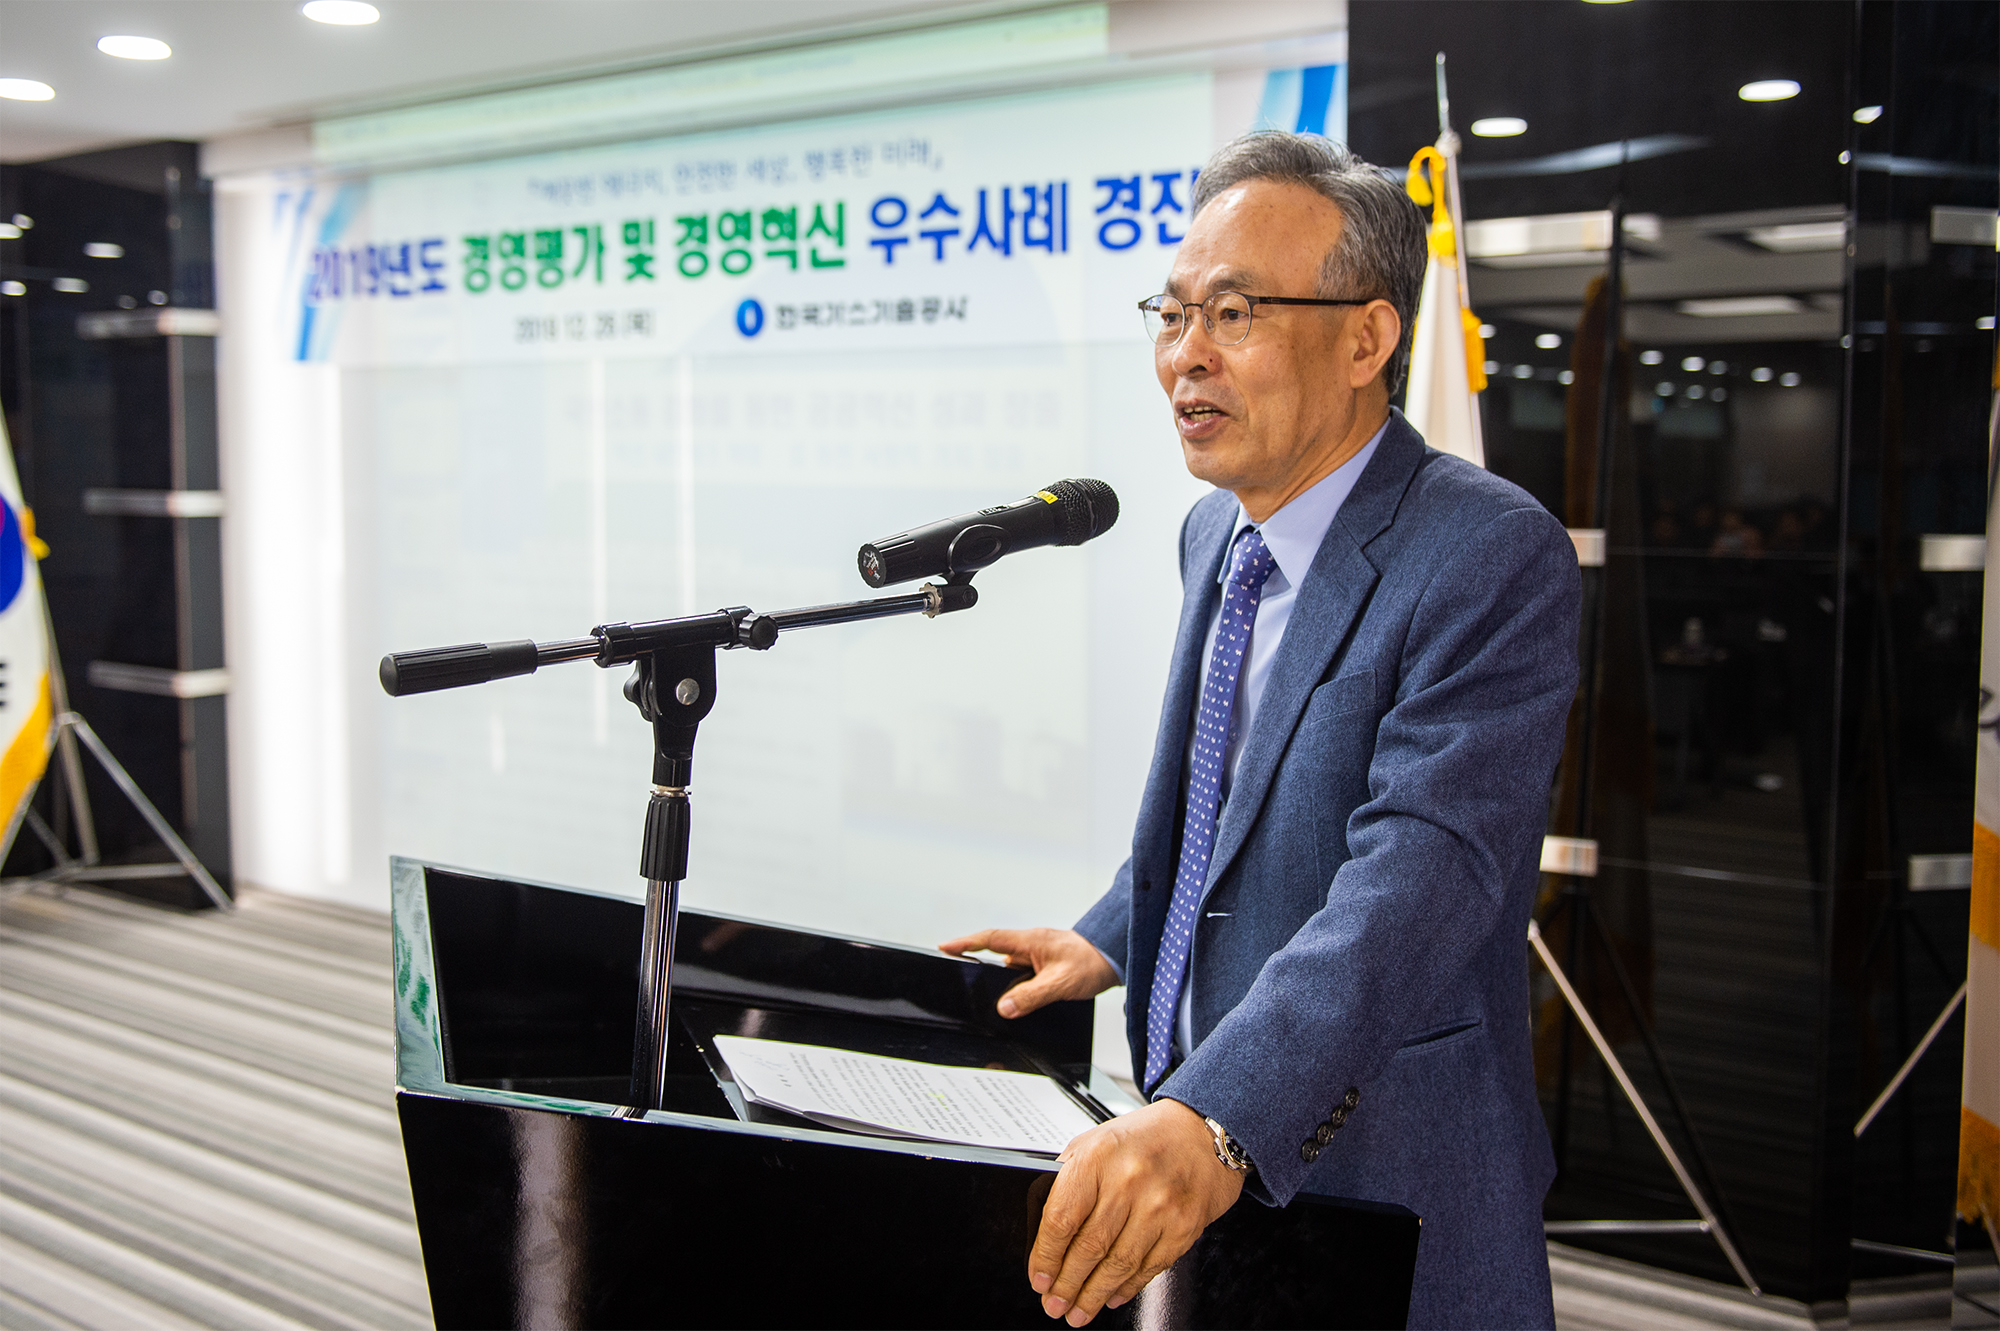 2019년 경영평가 및 경영혁신 우수사례 경진대회 개최